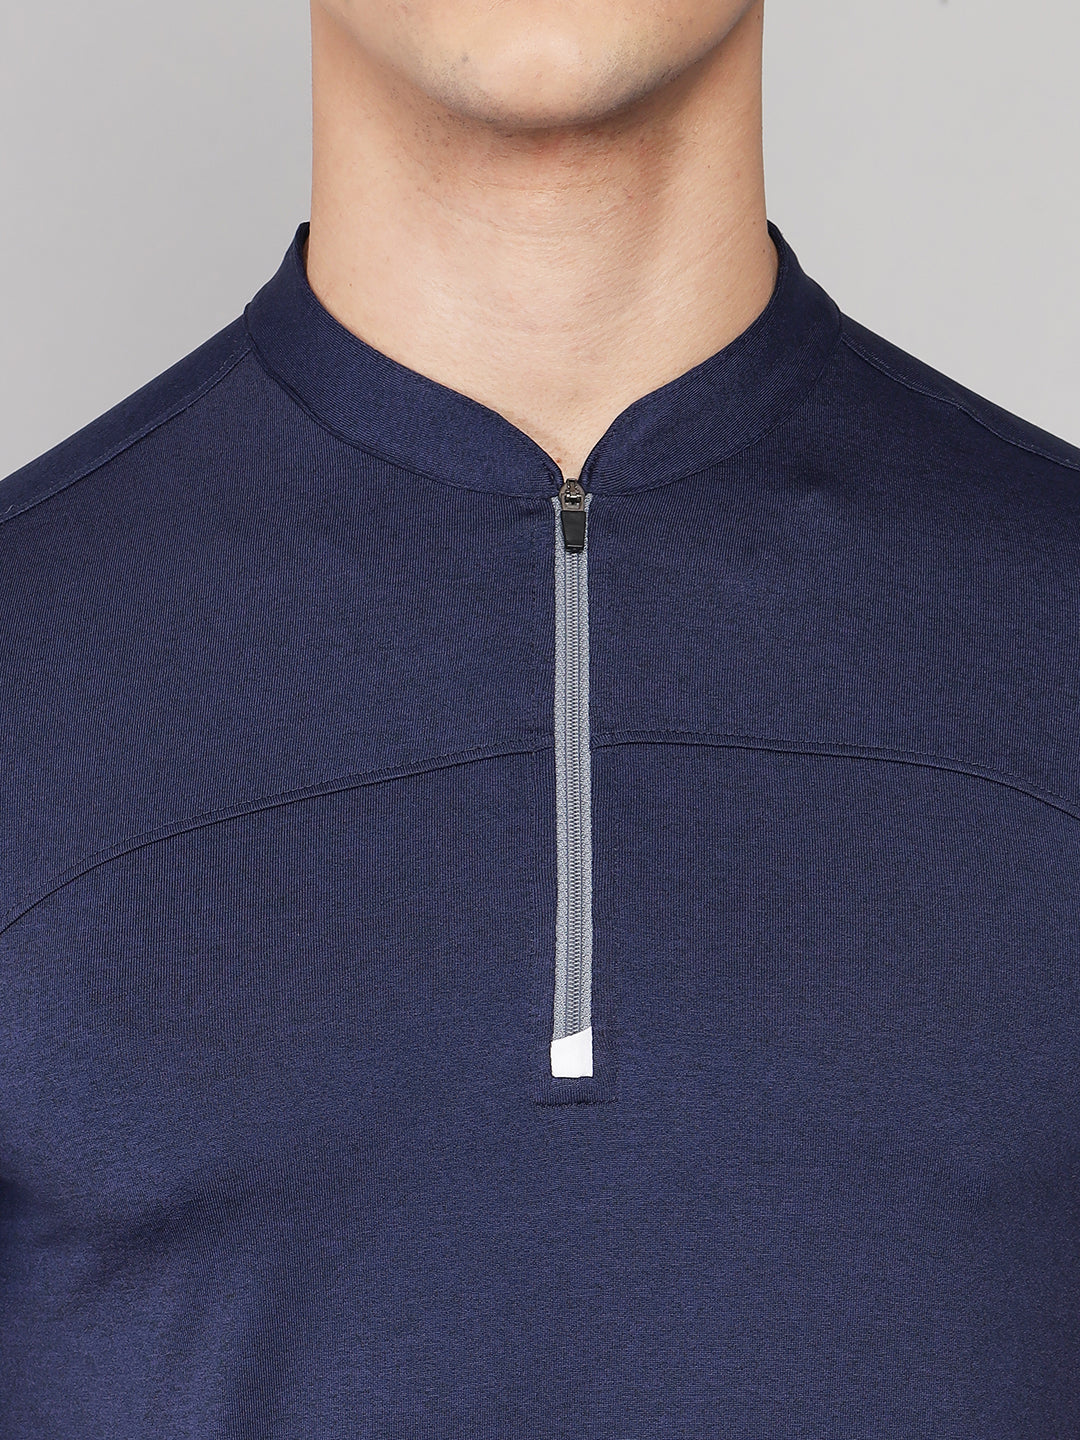 Blue Band zipper Neck Half sleeves T-Shirt